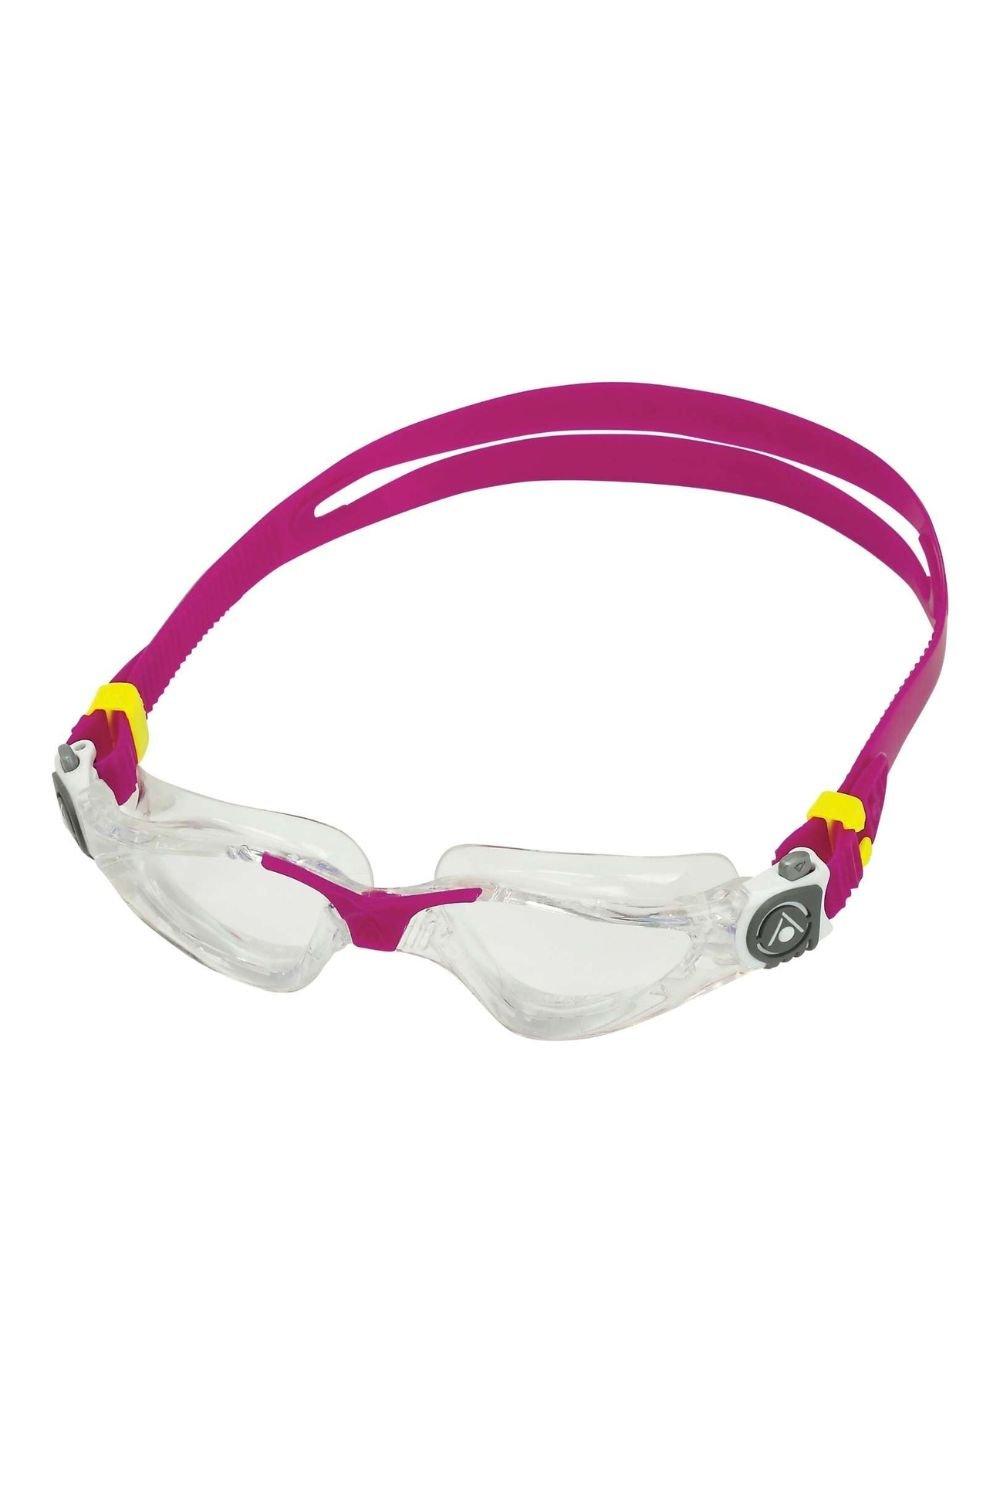 Женские очки для плавания Kayenne Aquasphere, розовый очки для плавания водонепроницаемые противотуманные hd очки для плавания с градусом очки для дайвинга для женщин